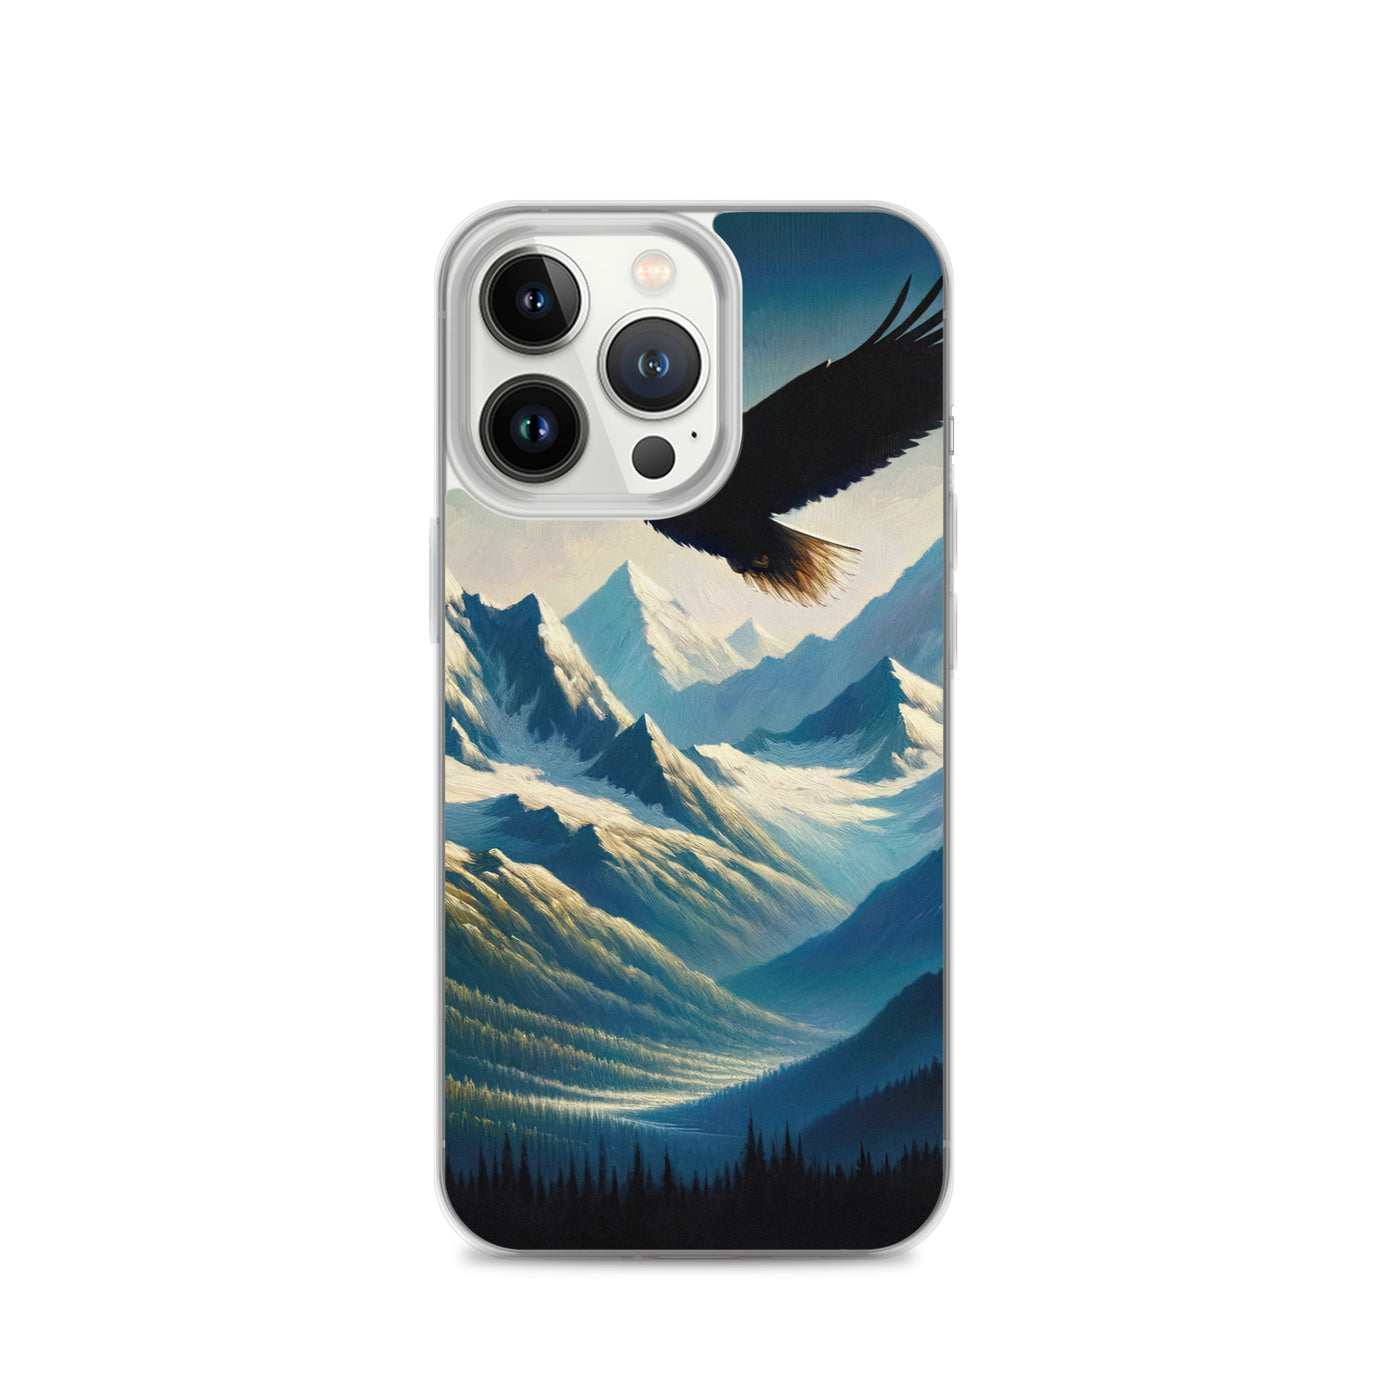 Ölgemälde eines Adlers vor schneebedeckten Bergsilhouetten - iPhone Schutzhülle (durchsichtig) berge xxx yyy zzz iPhone 13 Pro